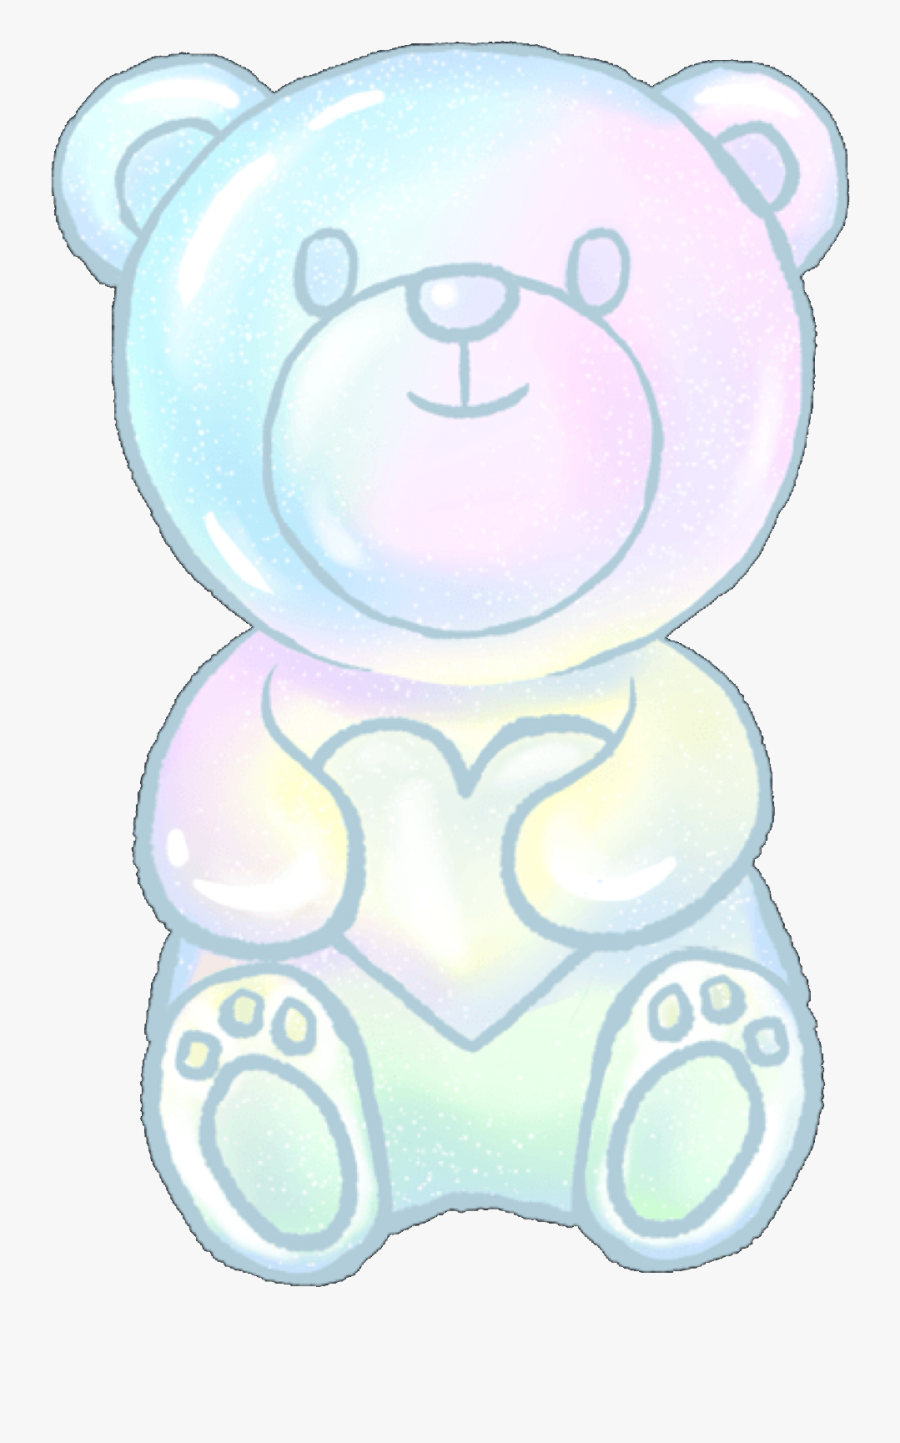 Super Cute Gummy Bear Sticker 👍 - Cute Gummy Bear, Transparent Clipart